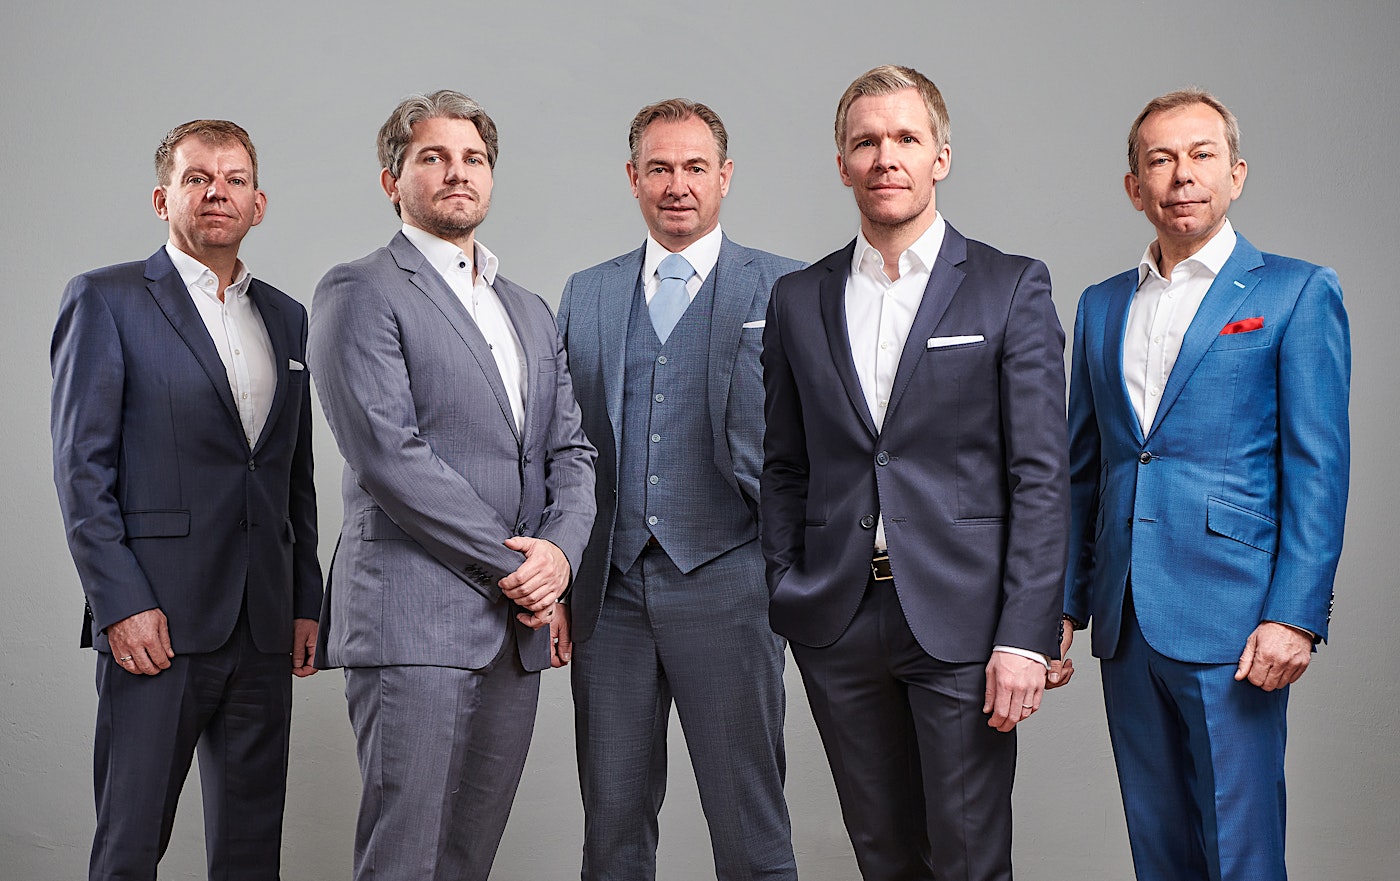 From left to right: Daniel Zorweg (Partner/President), Martin Zeiringer (CFO), Harald Buben (Co-Founder/President), Florian vom Bruch (CEO), Christian Zorweg (Co-Founder/President) — BUBEN&ZORWEG